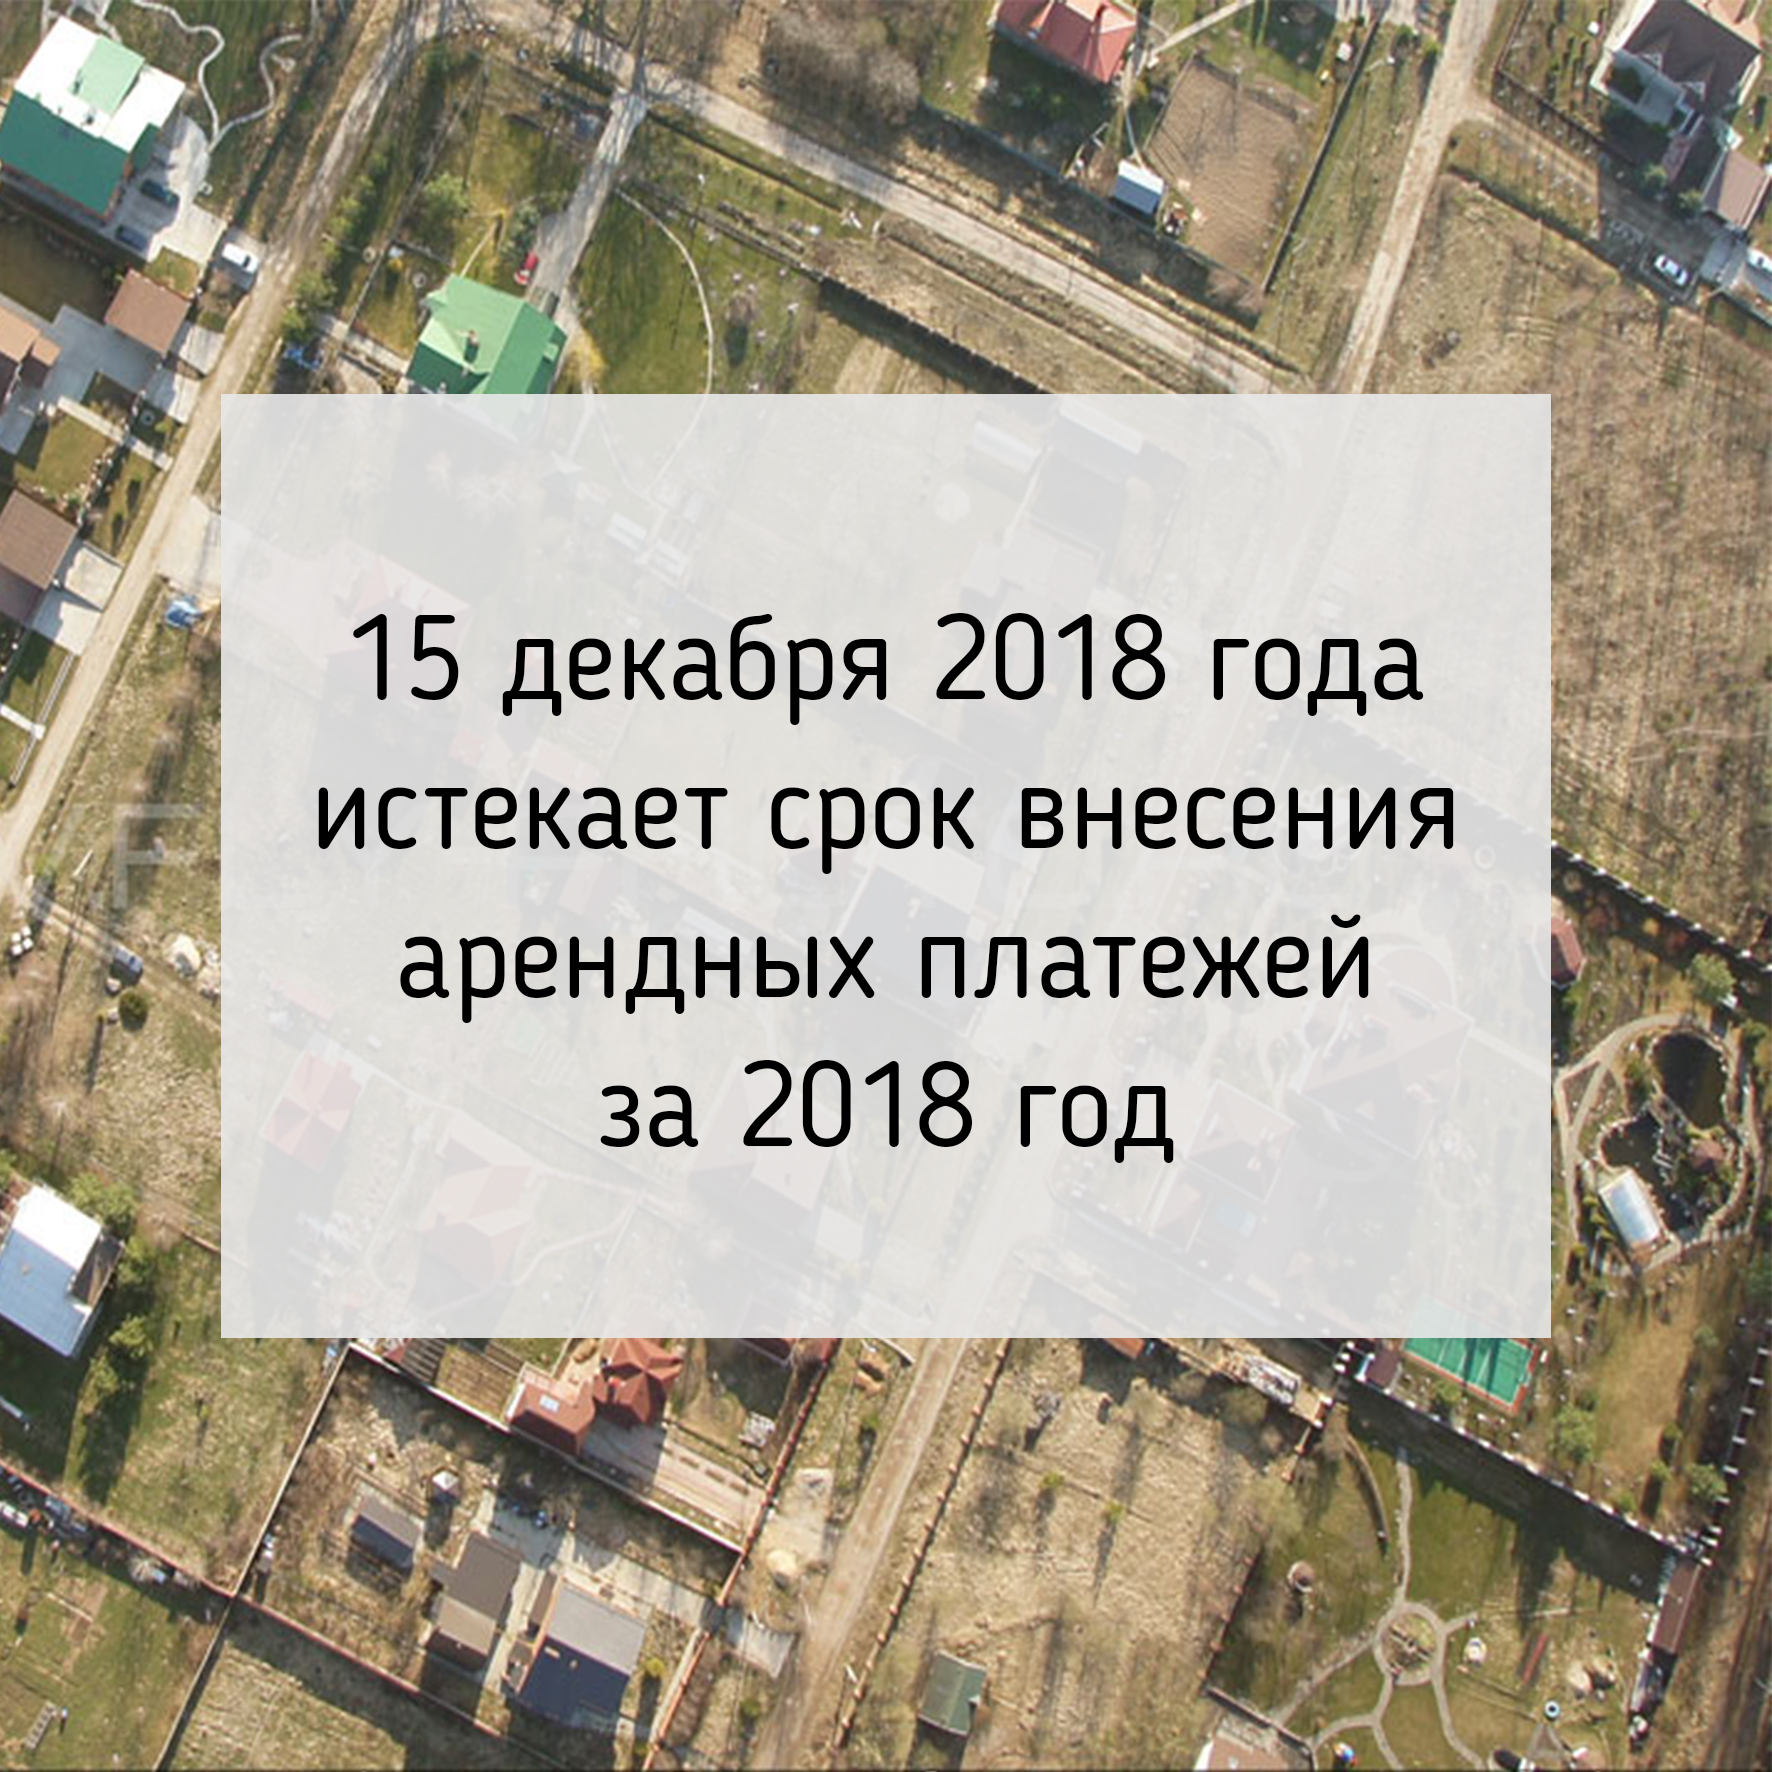 15 декабря истекает срок внесения арендных платежей за 2018 год.